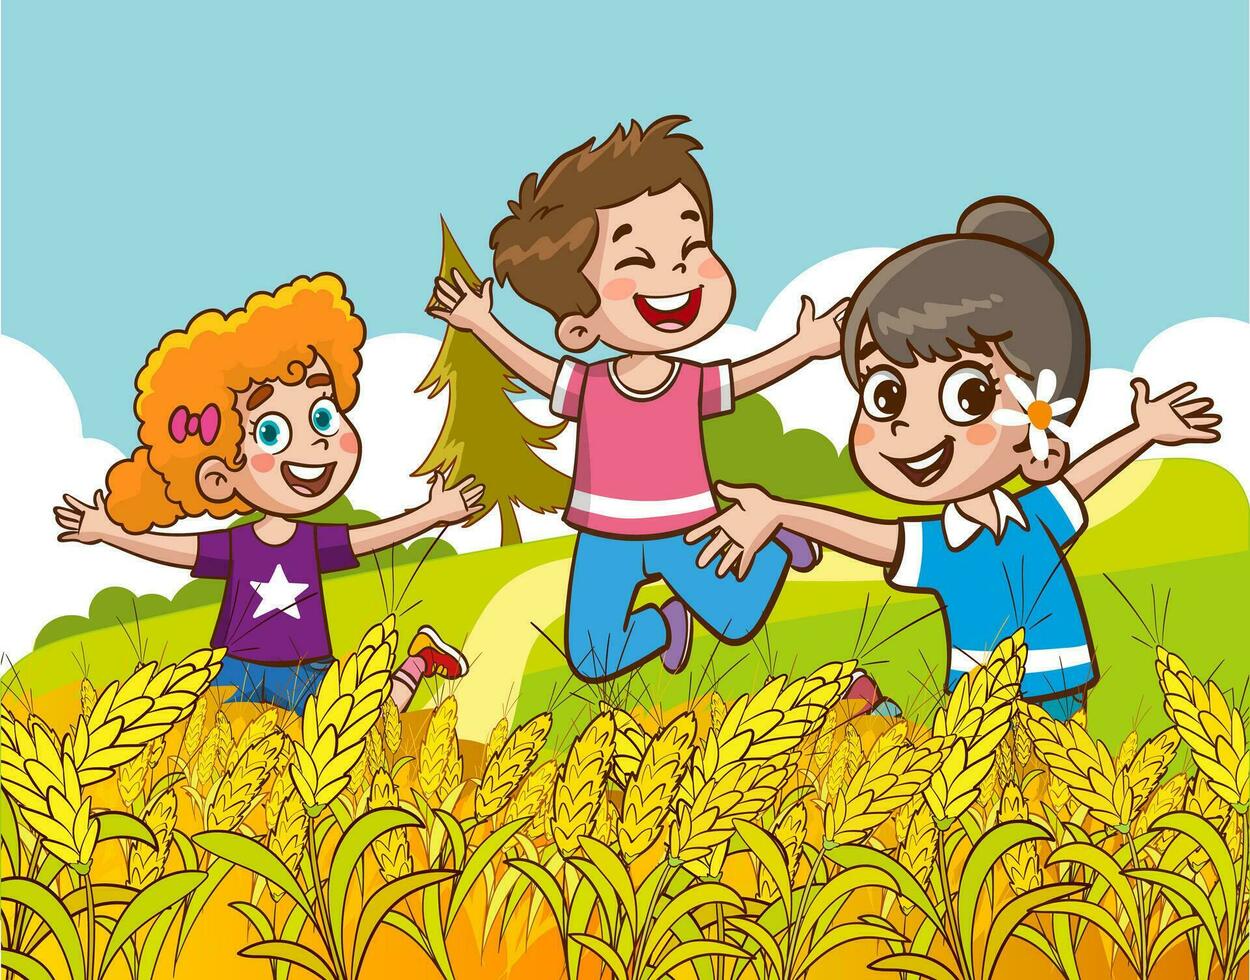 contento bambini giocando nel Grano campo. vettore illustrazione di bambini avendo divertimento all'aperto.